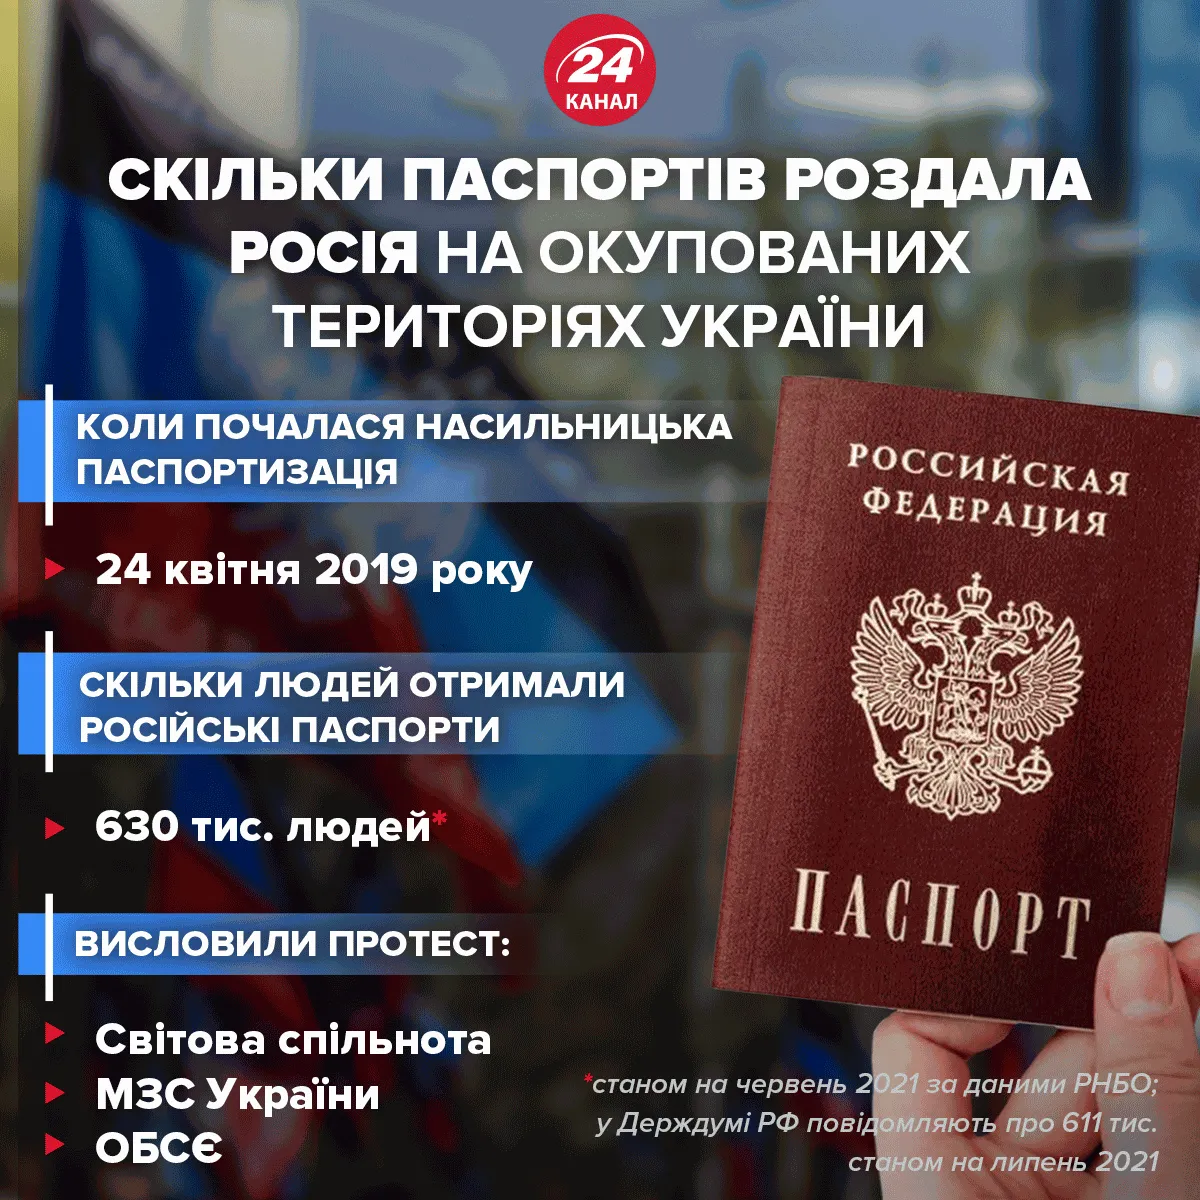 Кількість паспортів, що видала Росія жителям ОРДЛО / Інфографіка 24 каналу